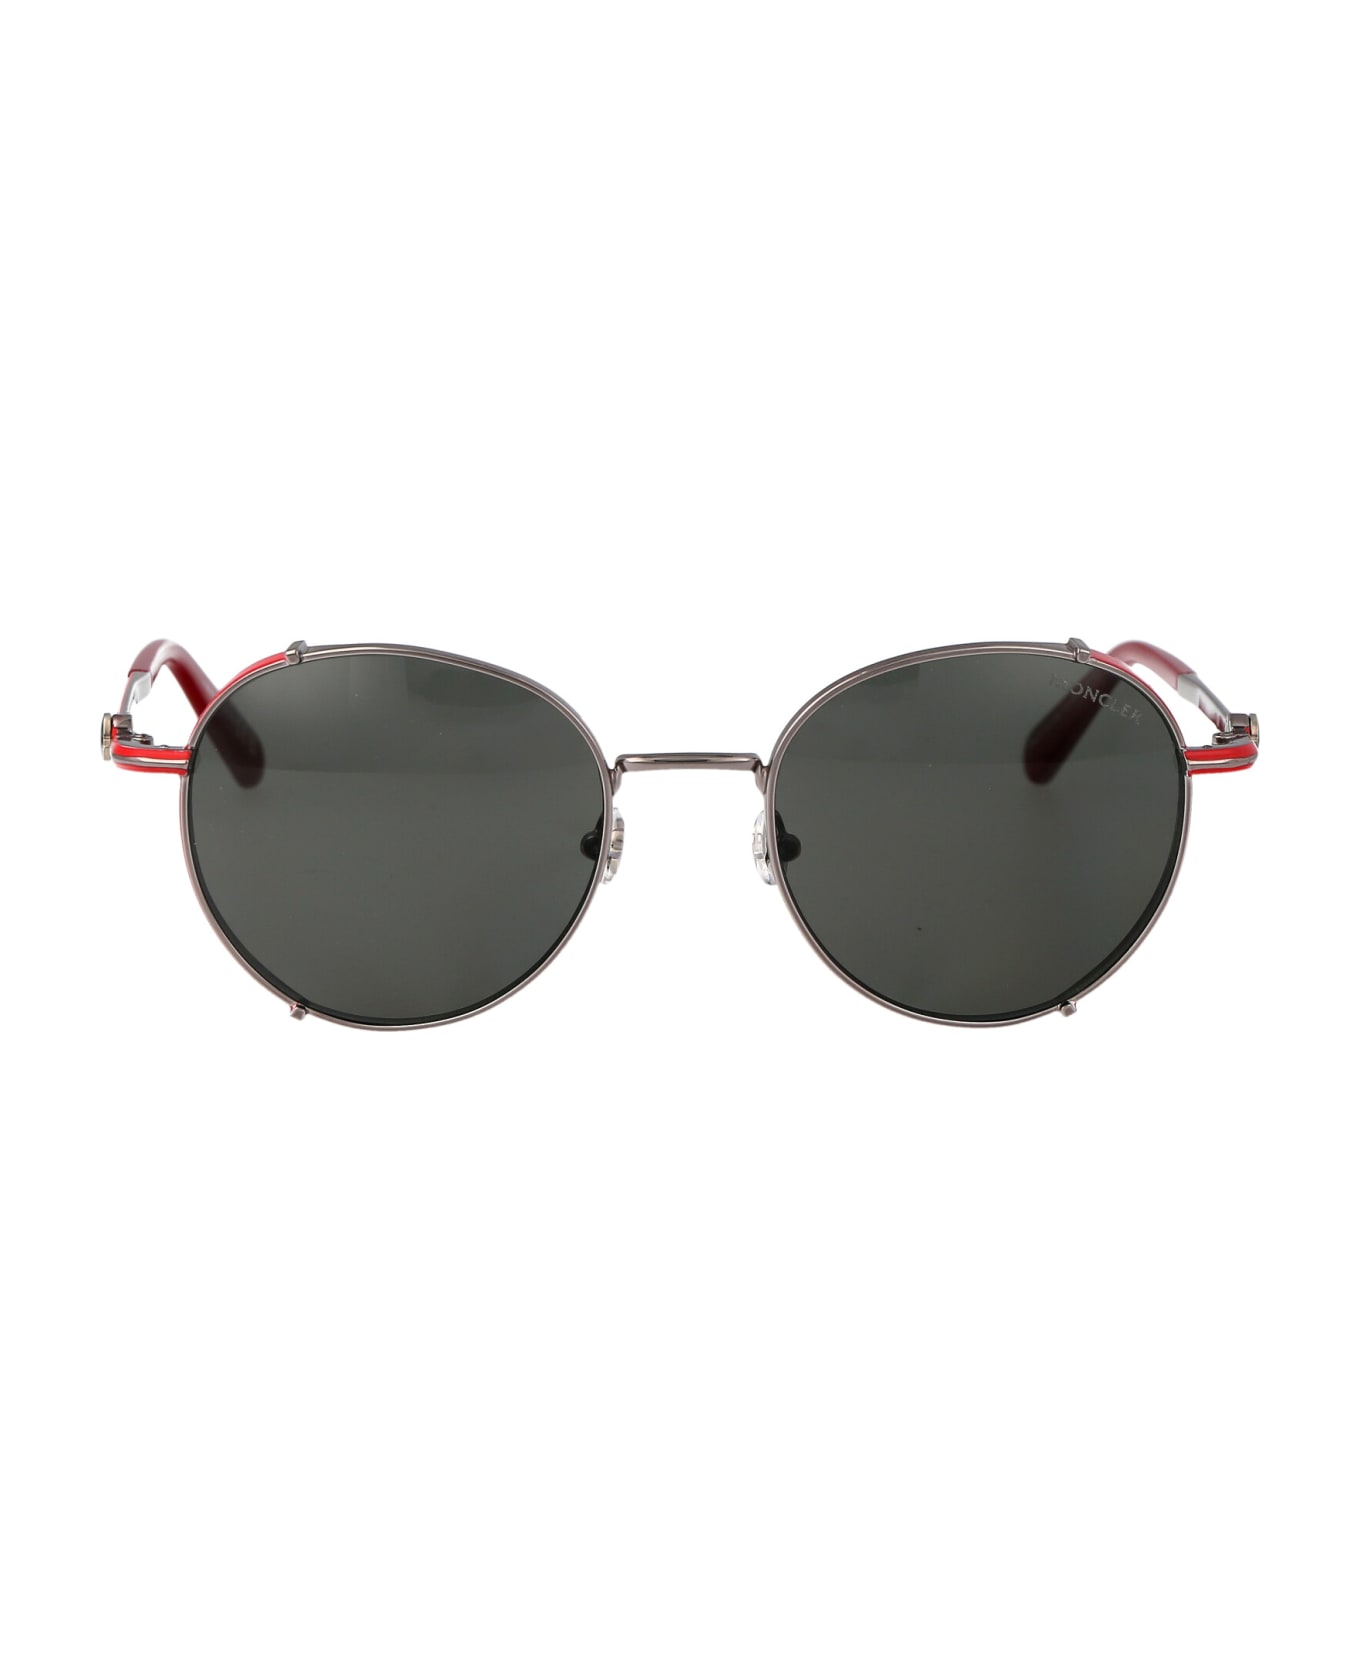 Moncler Eyewear Ml0286 Sunglasses - 14 Rutenio Chiaro Lucido